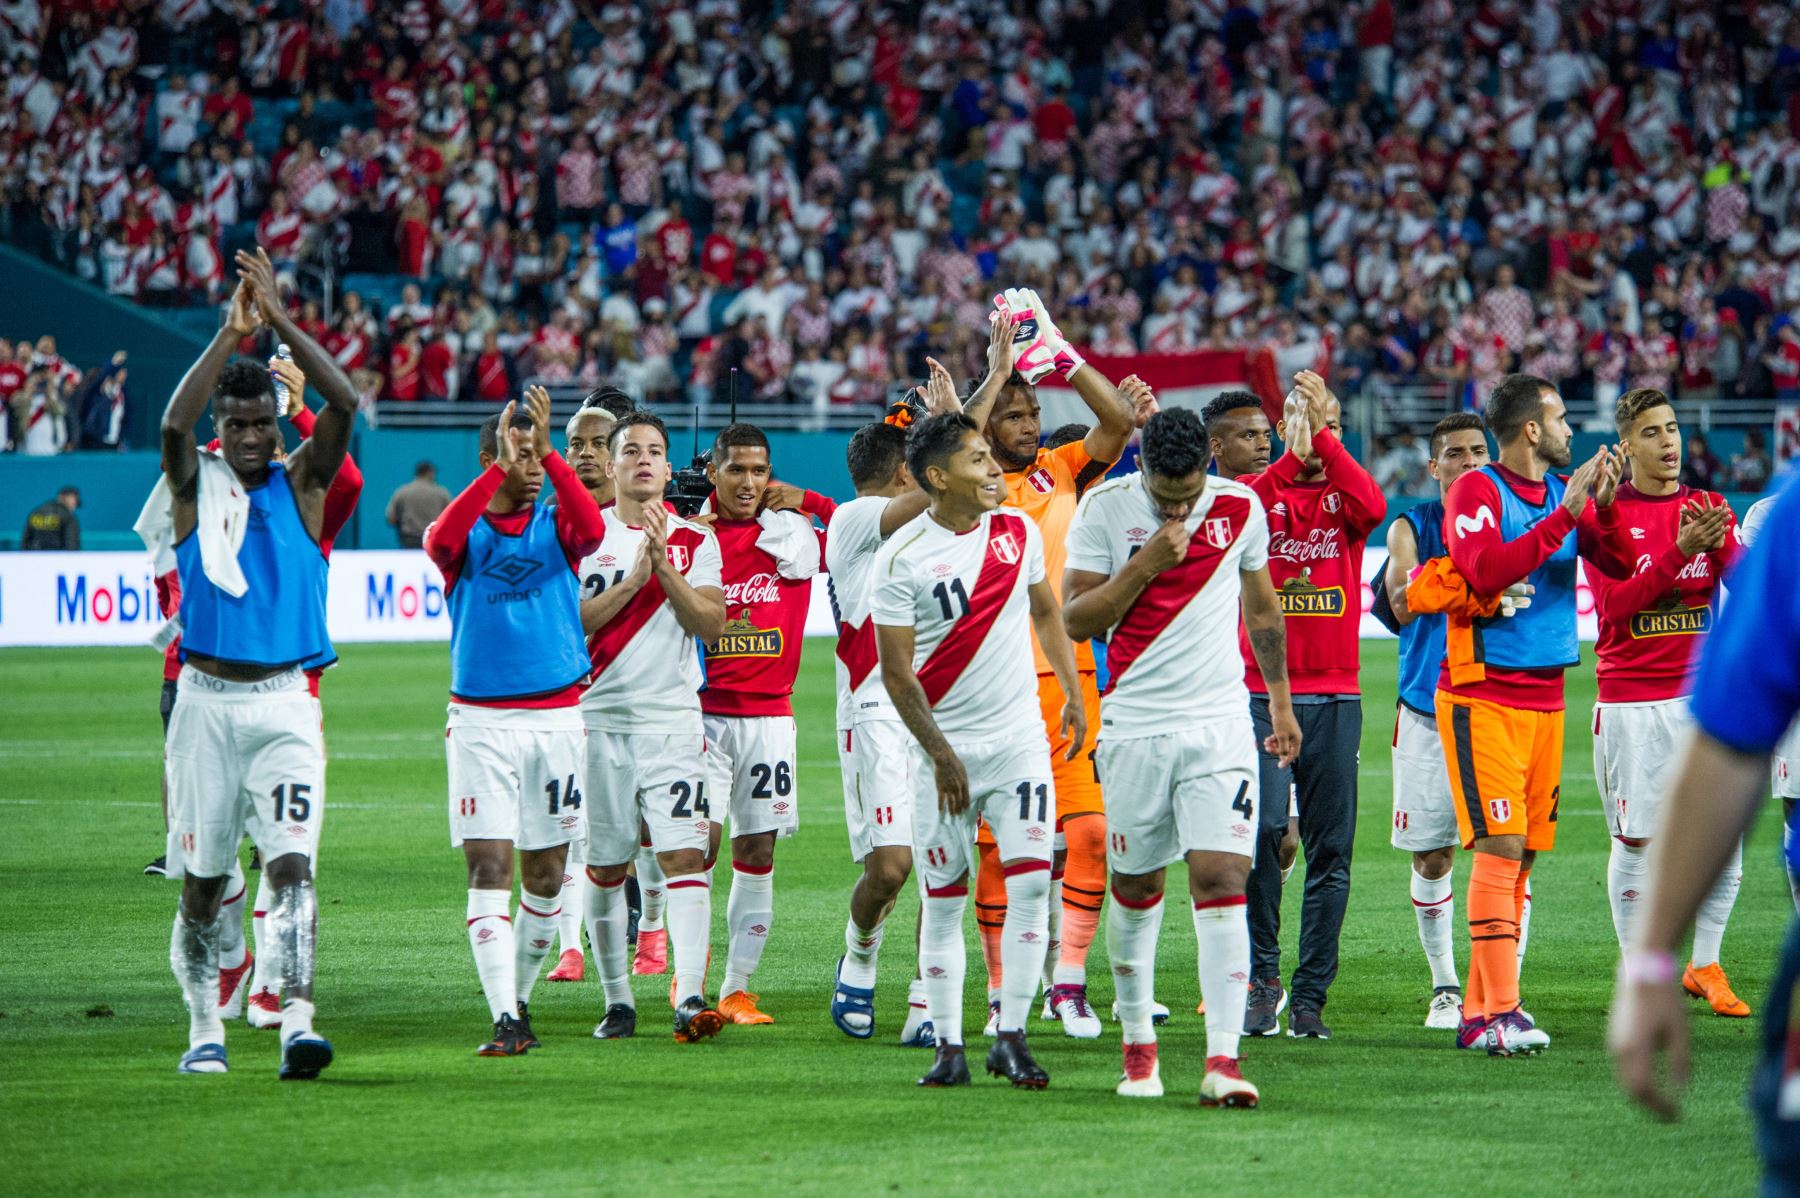 Los jugadores del equipo de Perú saludan al público mientras se retiran del terreno de juego, luego de su victoria ante la selección de Croacia.Foto:EFE